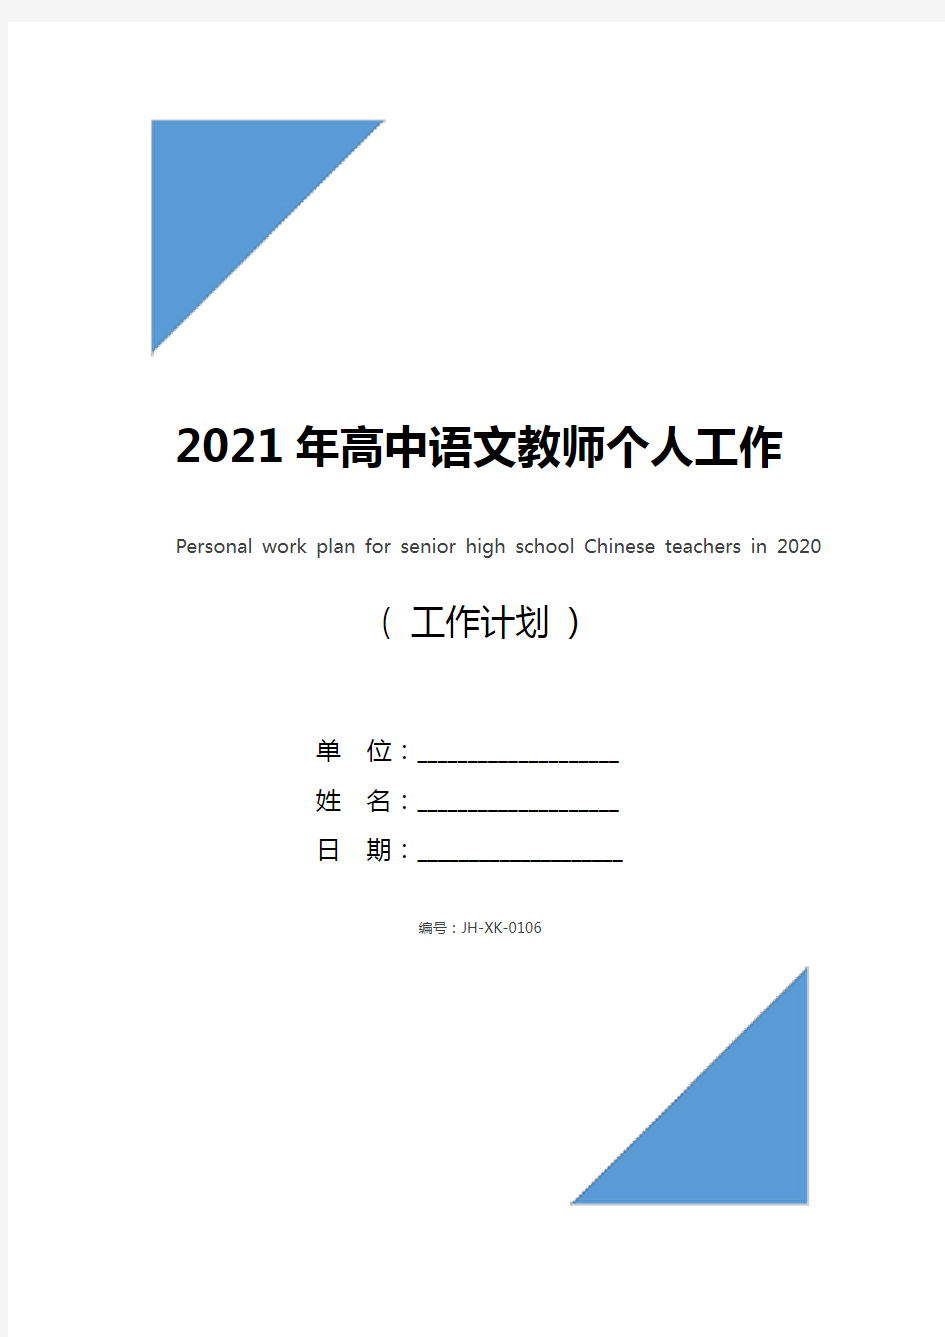 2021年高中语文教师个人工作计划(通用版)